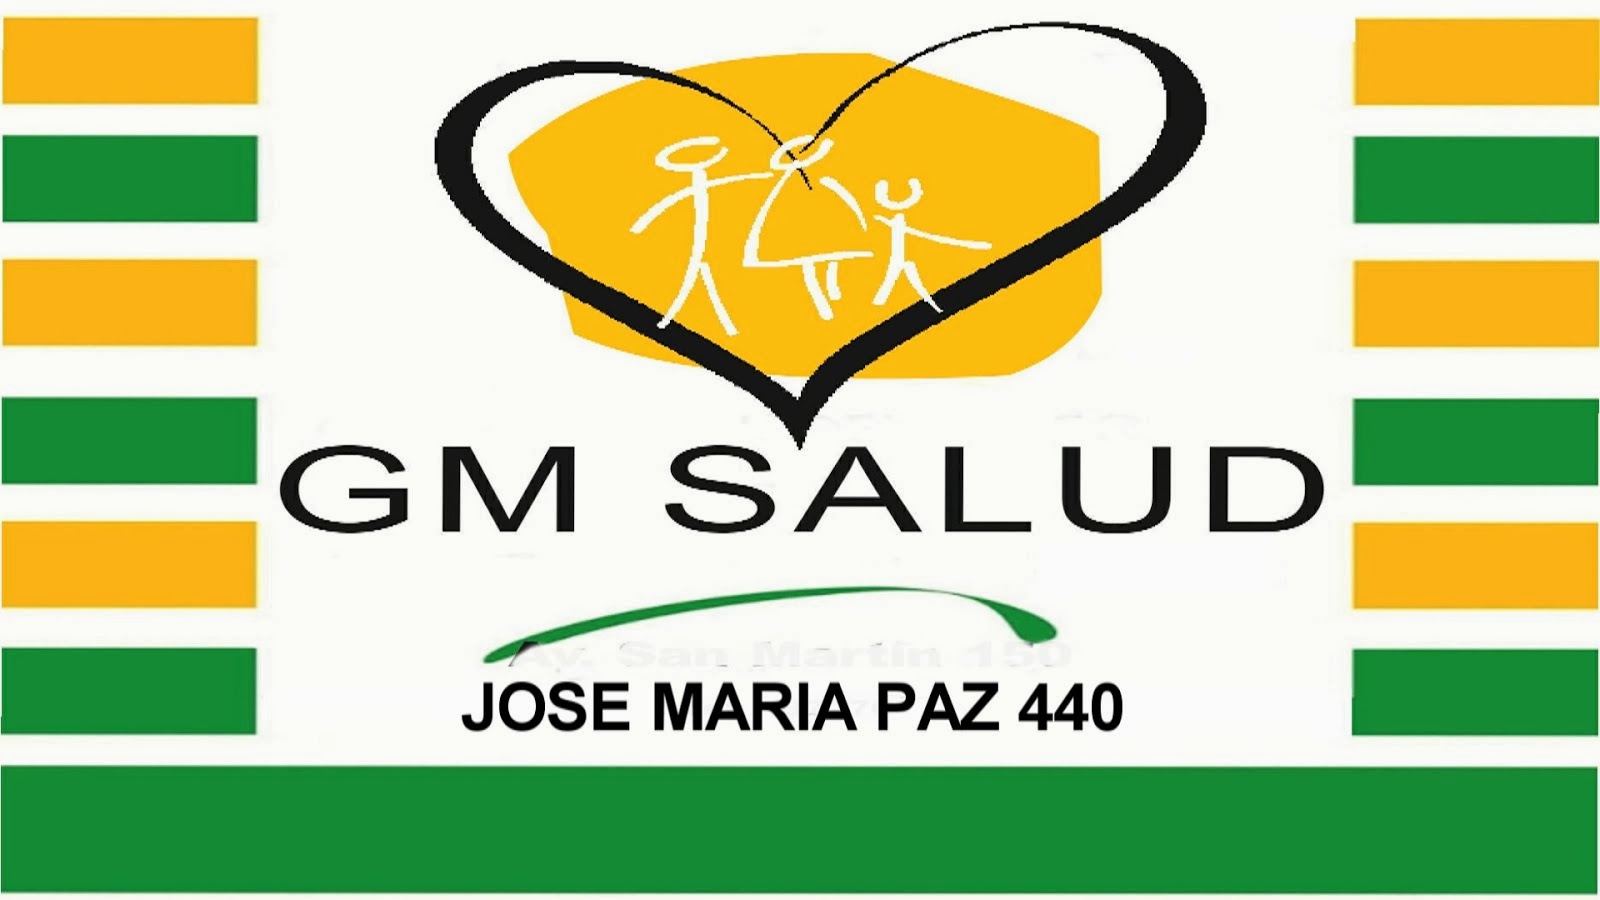 "GM SALUD "  LA MUTUAL DE LOS EMPLEADOS MOSAISTAS